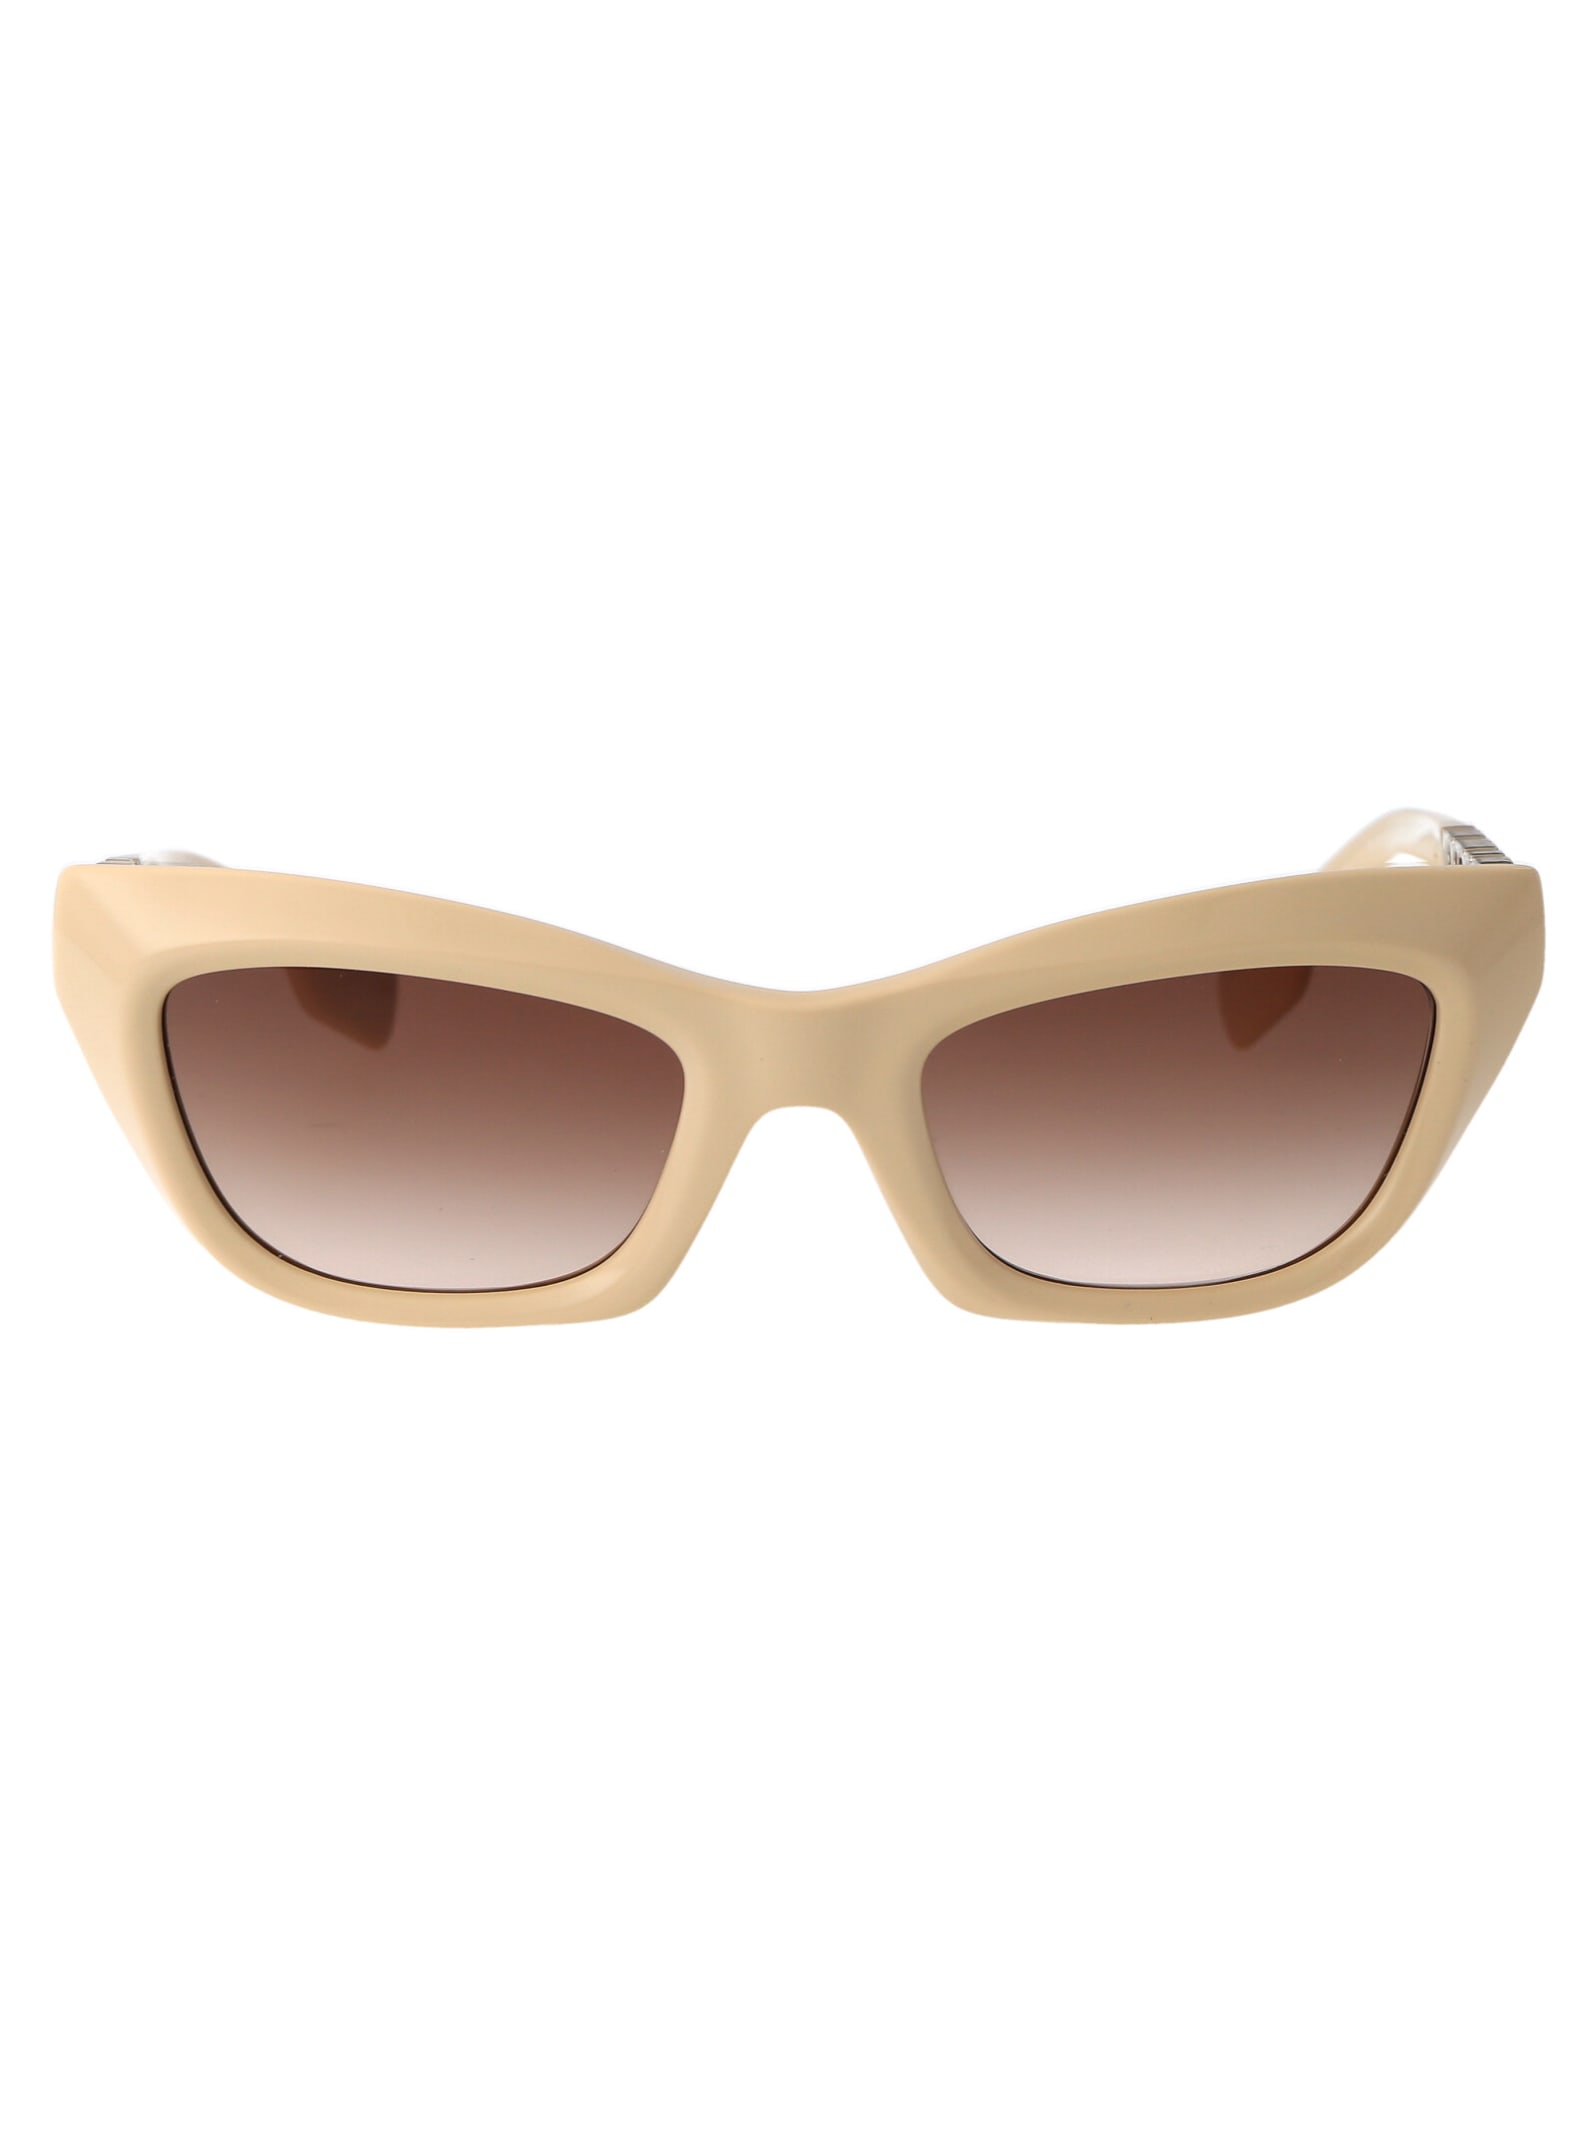 Burberry Eyewear 0be4409 Sunglasses In 409213 Beige